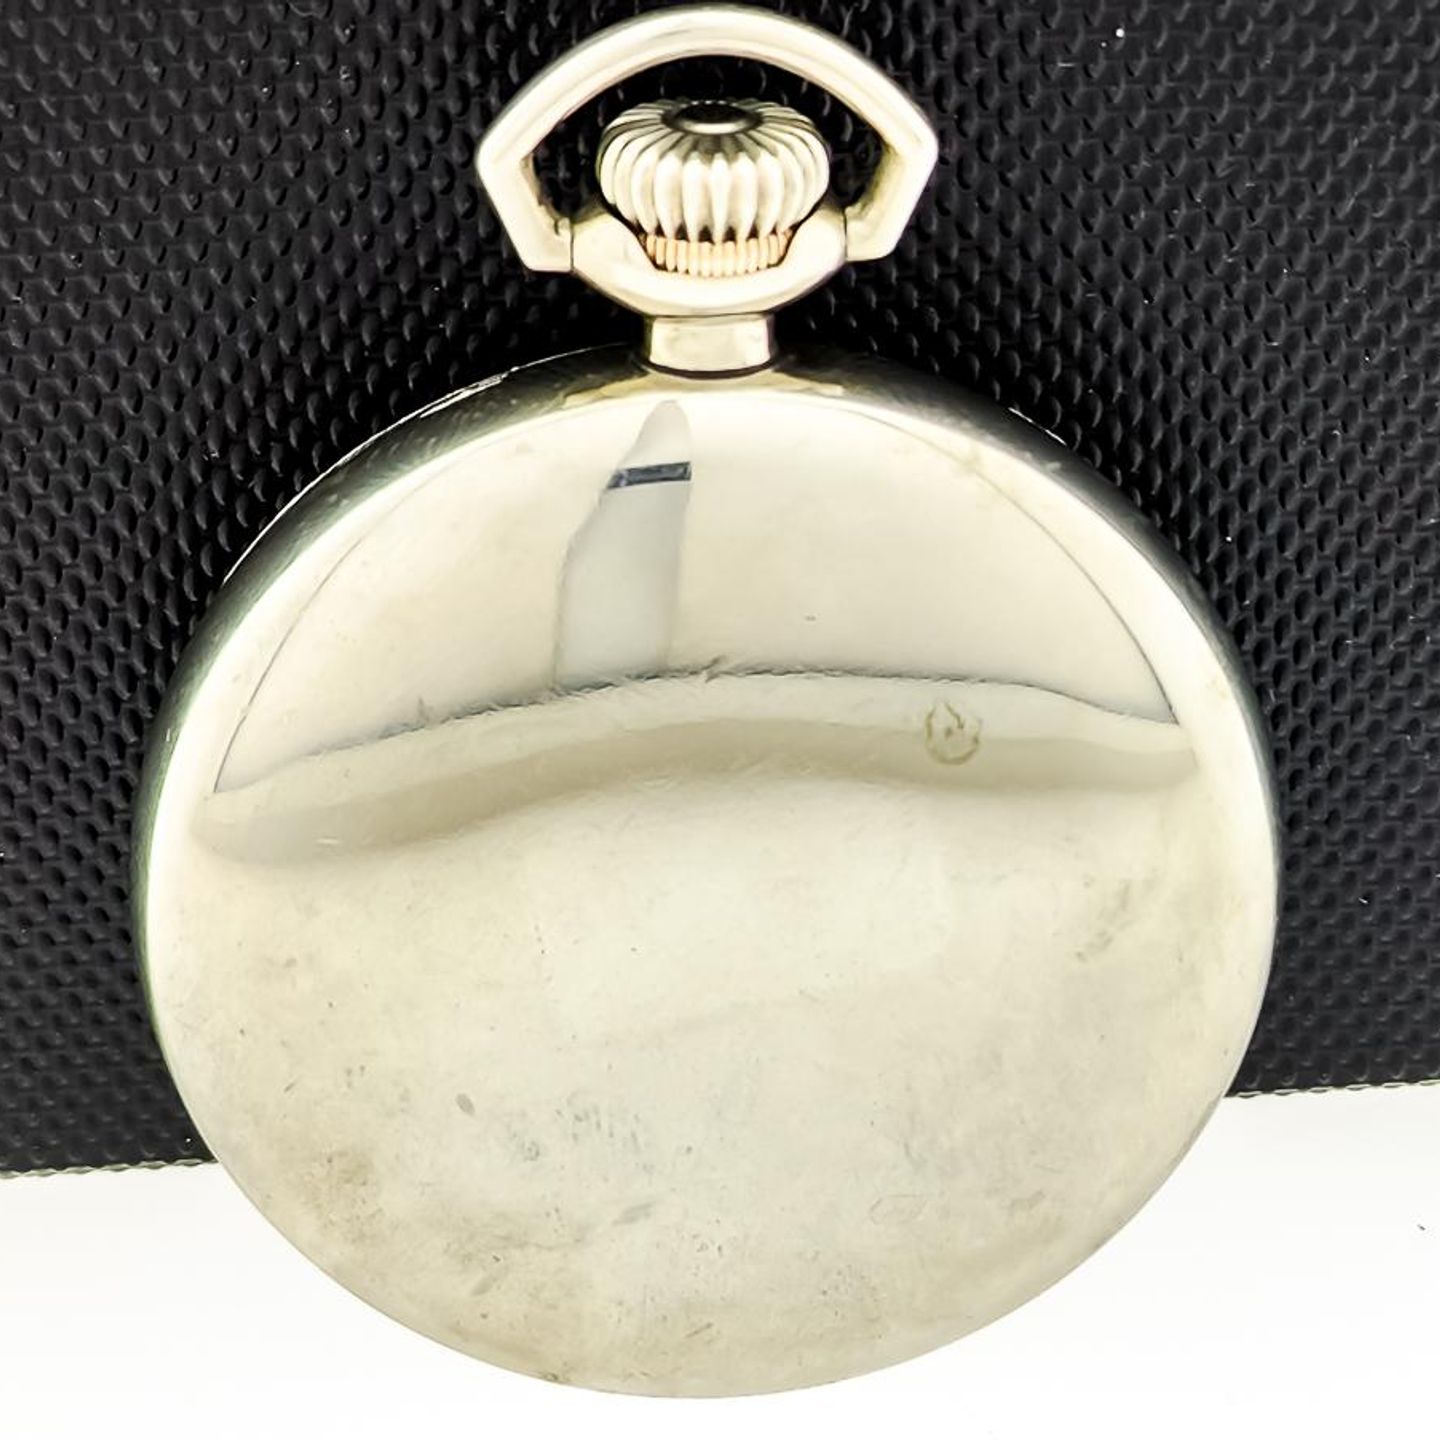 Vacheron Constantin Pocket watch Unknown (Unknown (random serial)) - White dial Unknown Unknown case (2/8)